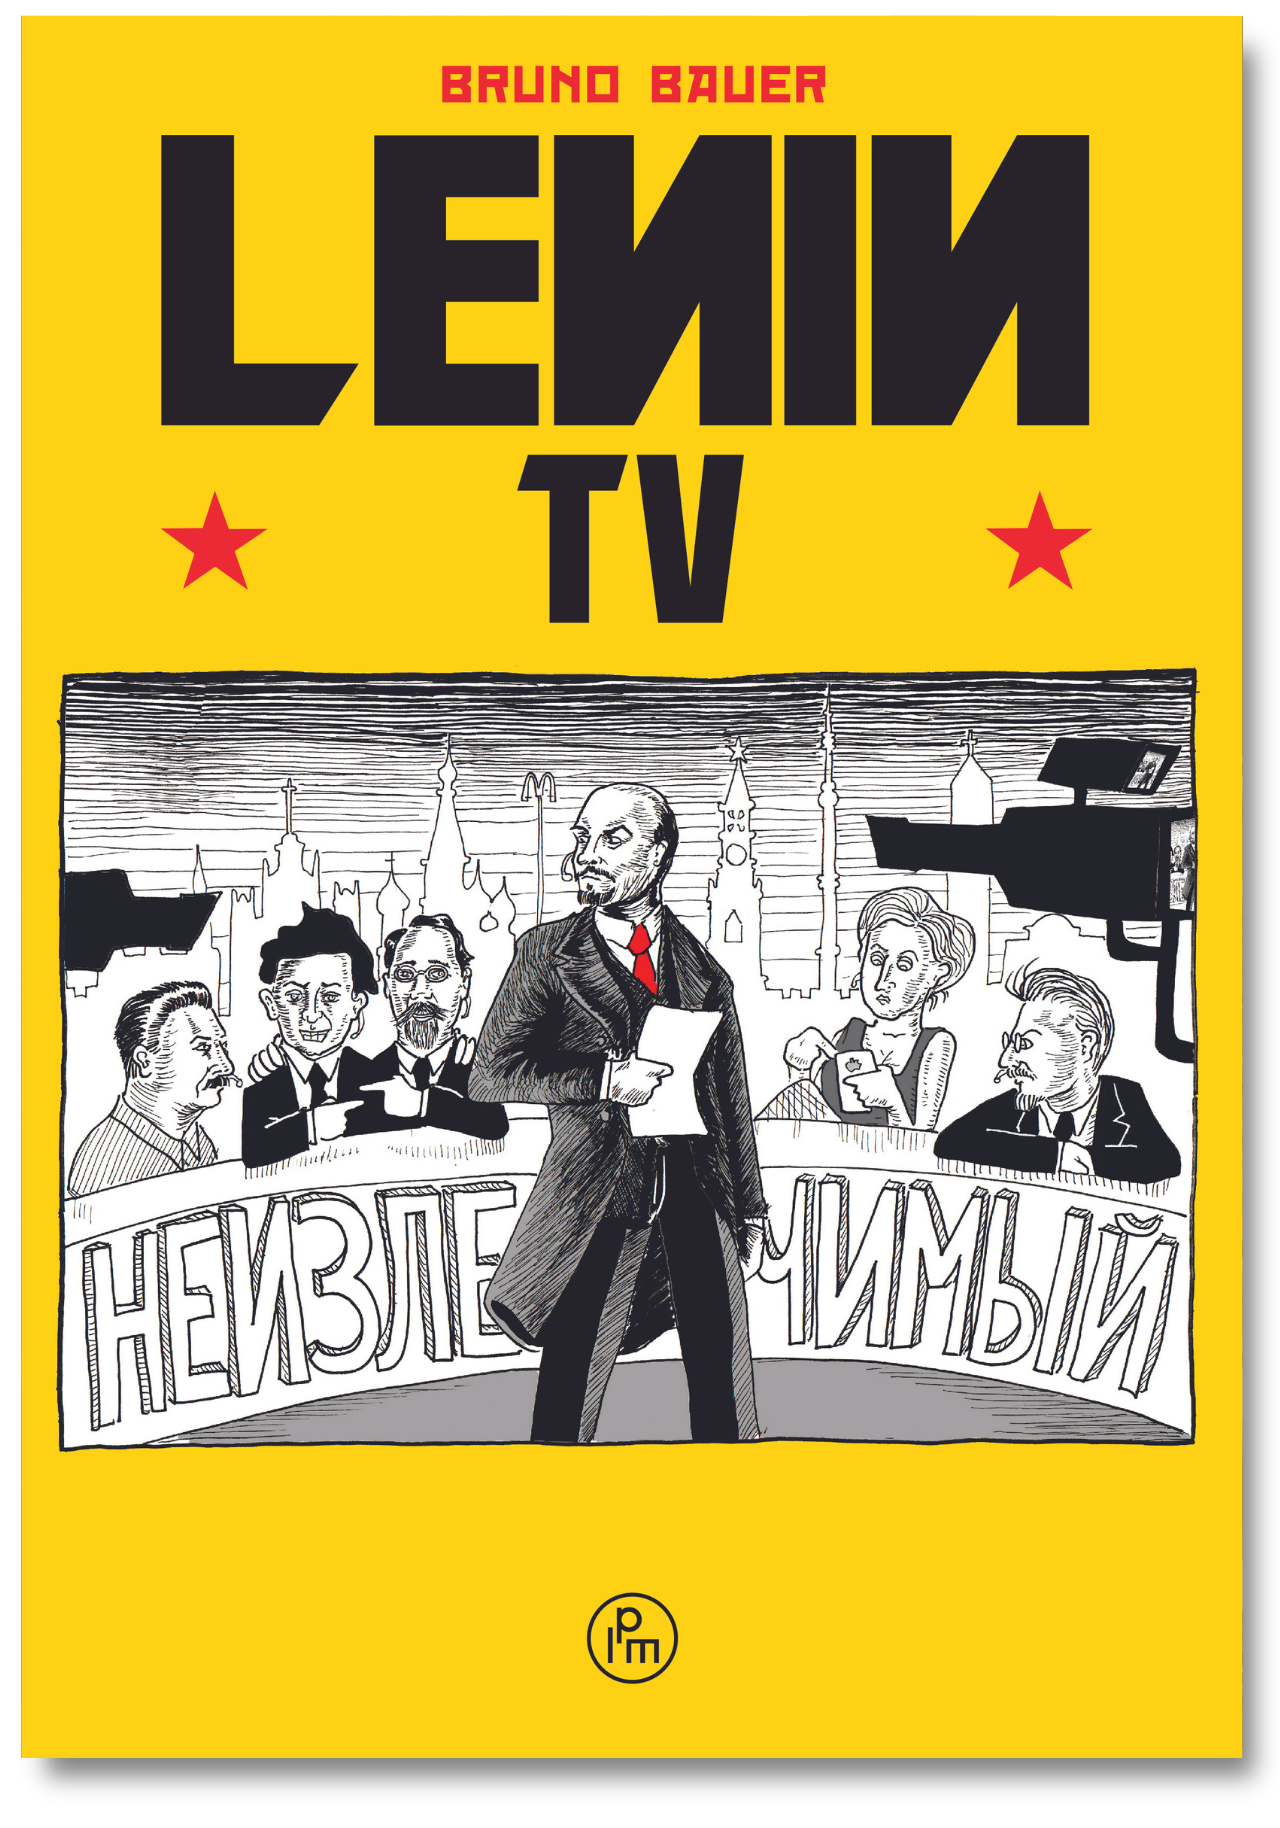 Lenin TV